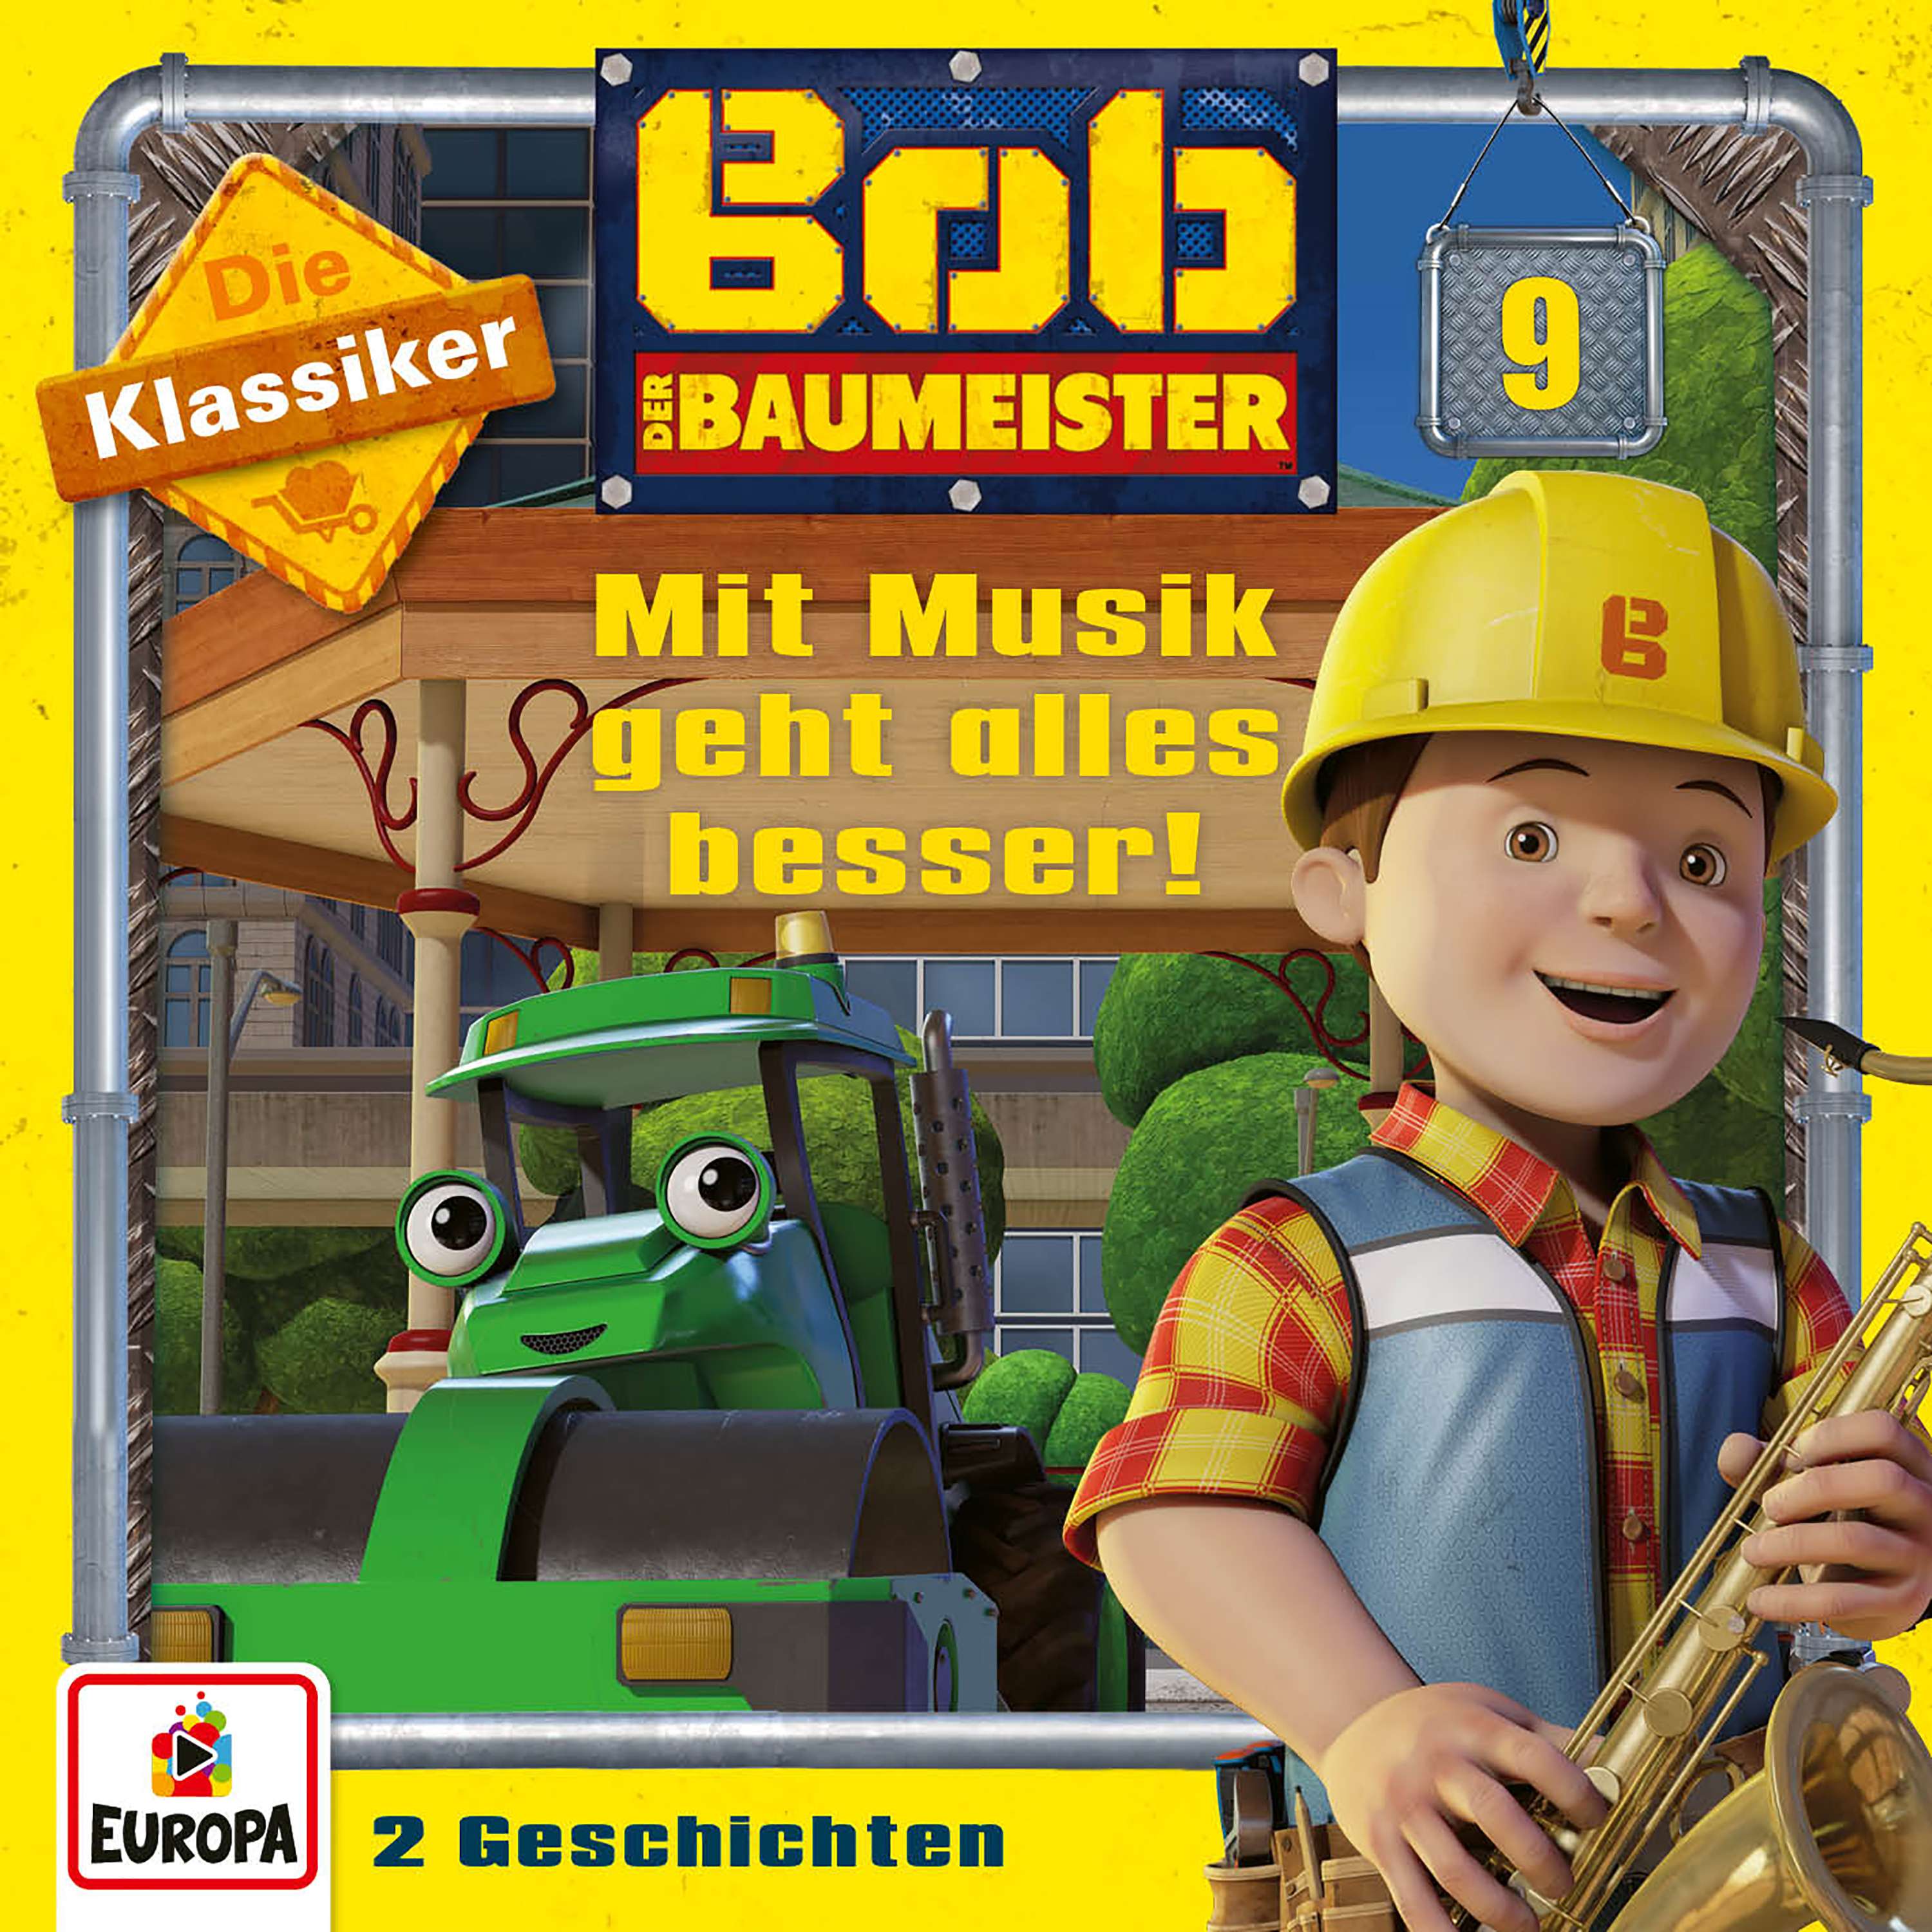 Bob der Baumeister: Mit Musik geht alles besser! (Die Klassiker)